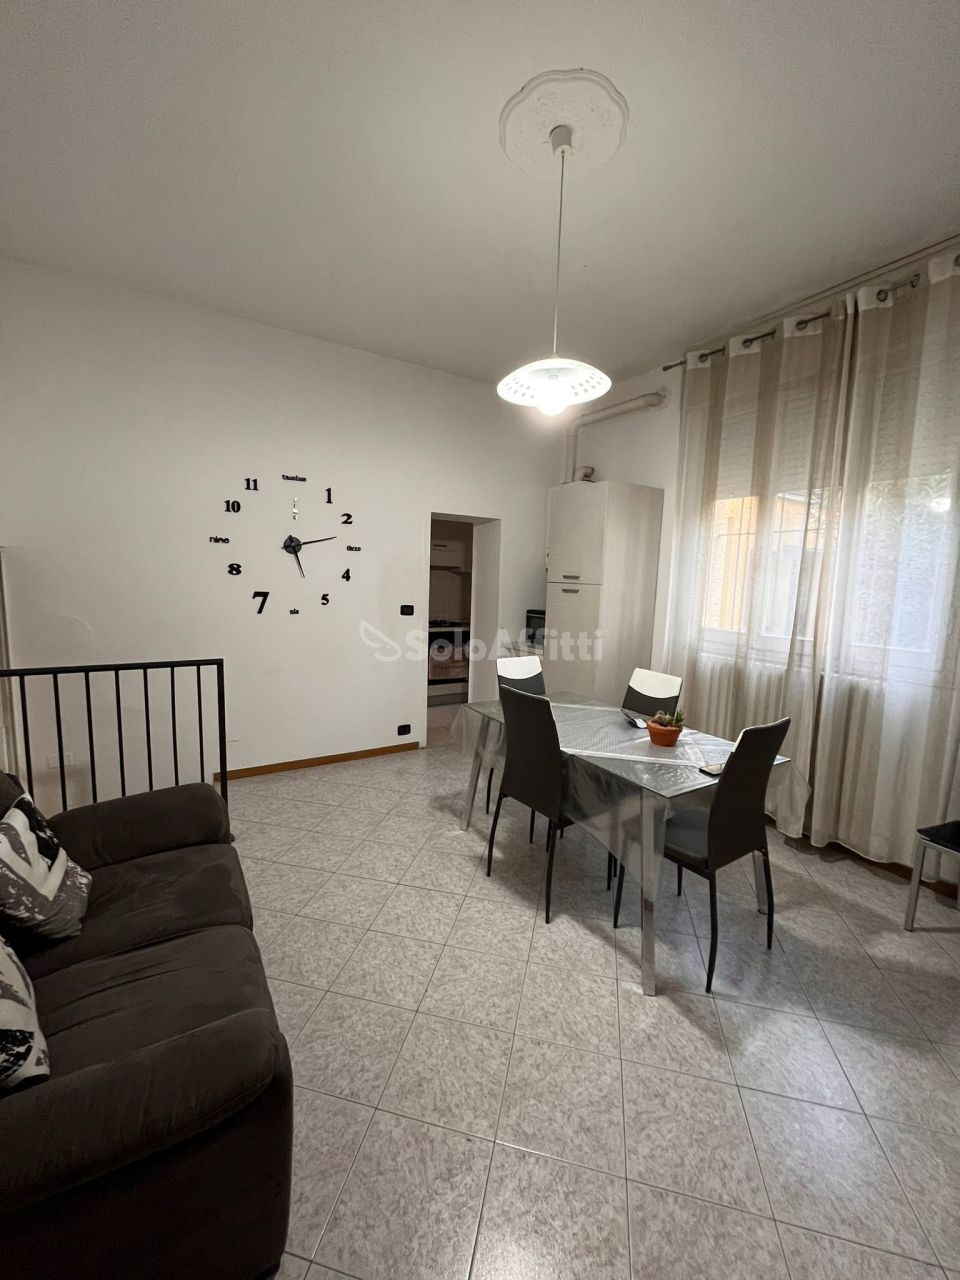 Appartamento in affitto a Mirandola, 4 locali, prezzo € 440 | PortaleAgenzieImmobiliari.it